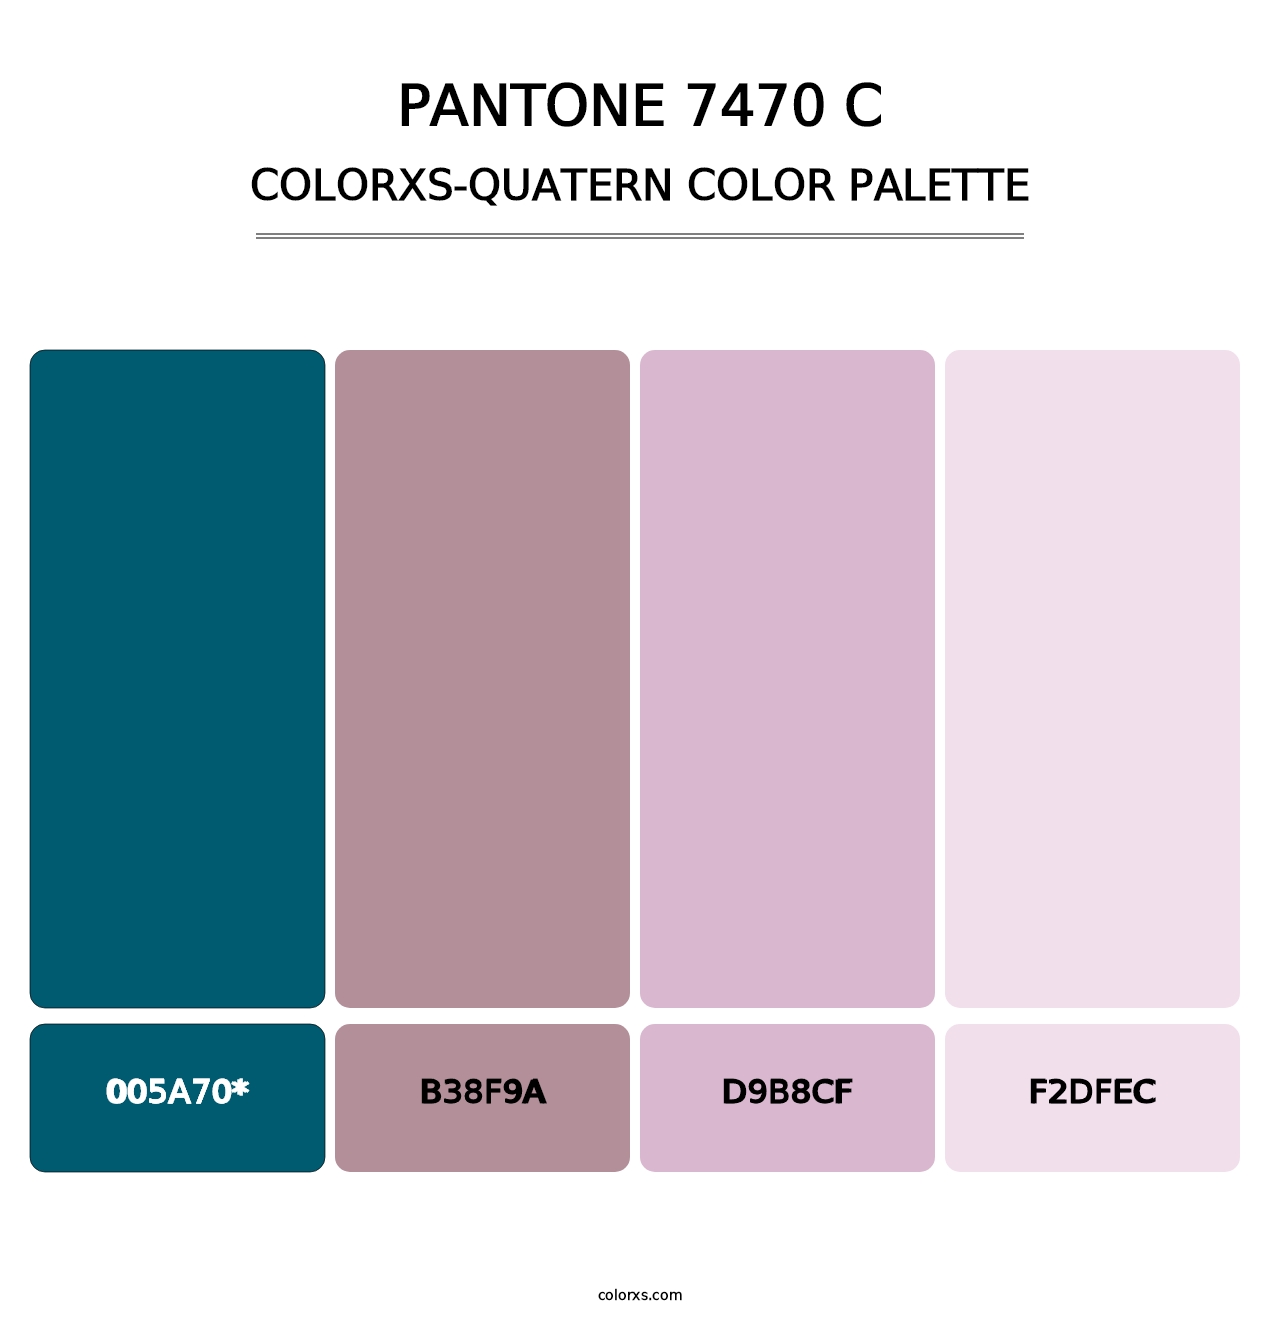 PANTONE 7470 C - Colorxs Quatern Palette